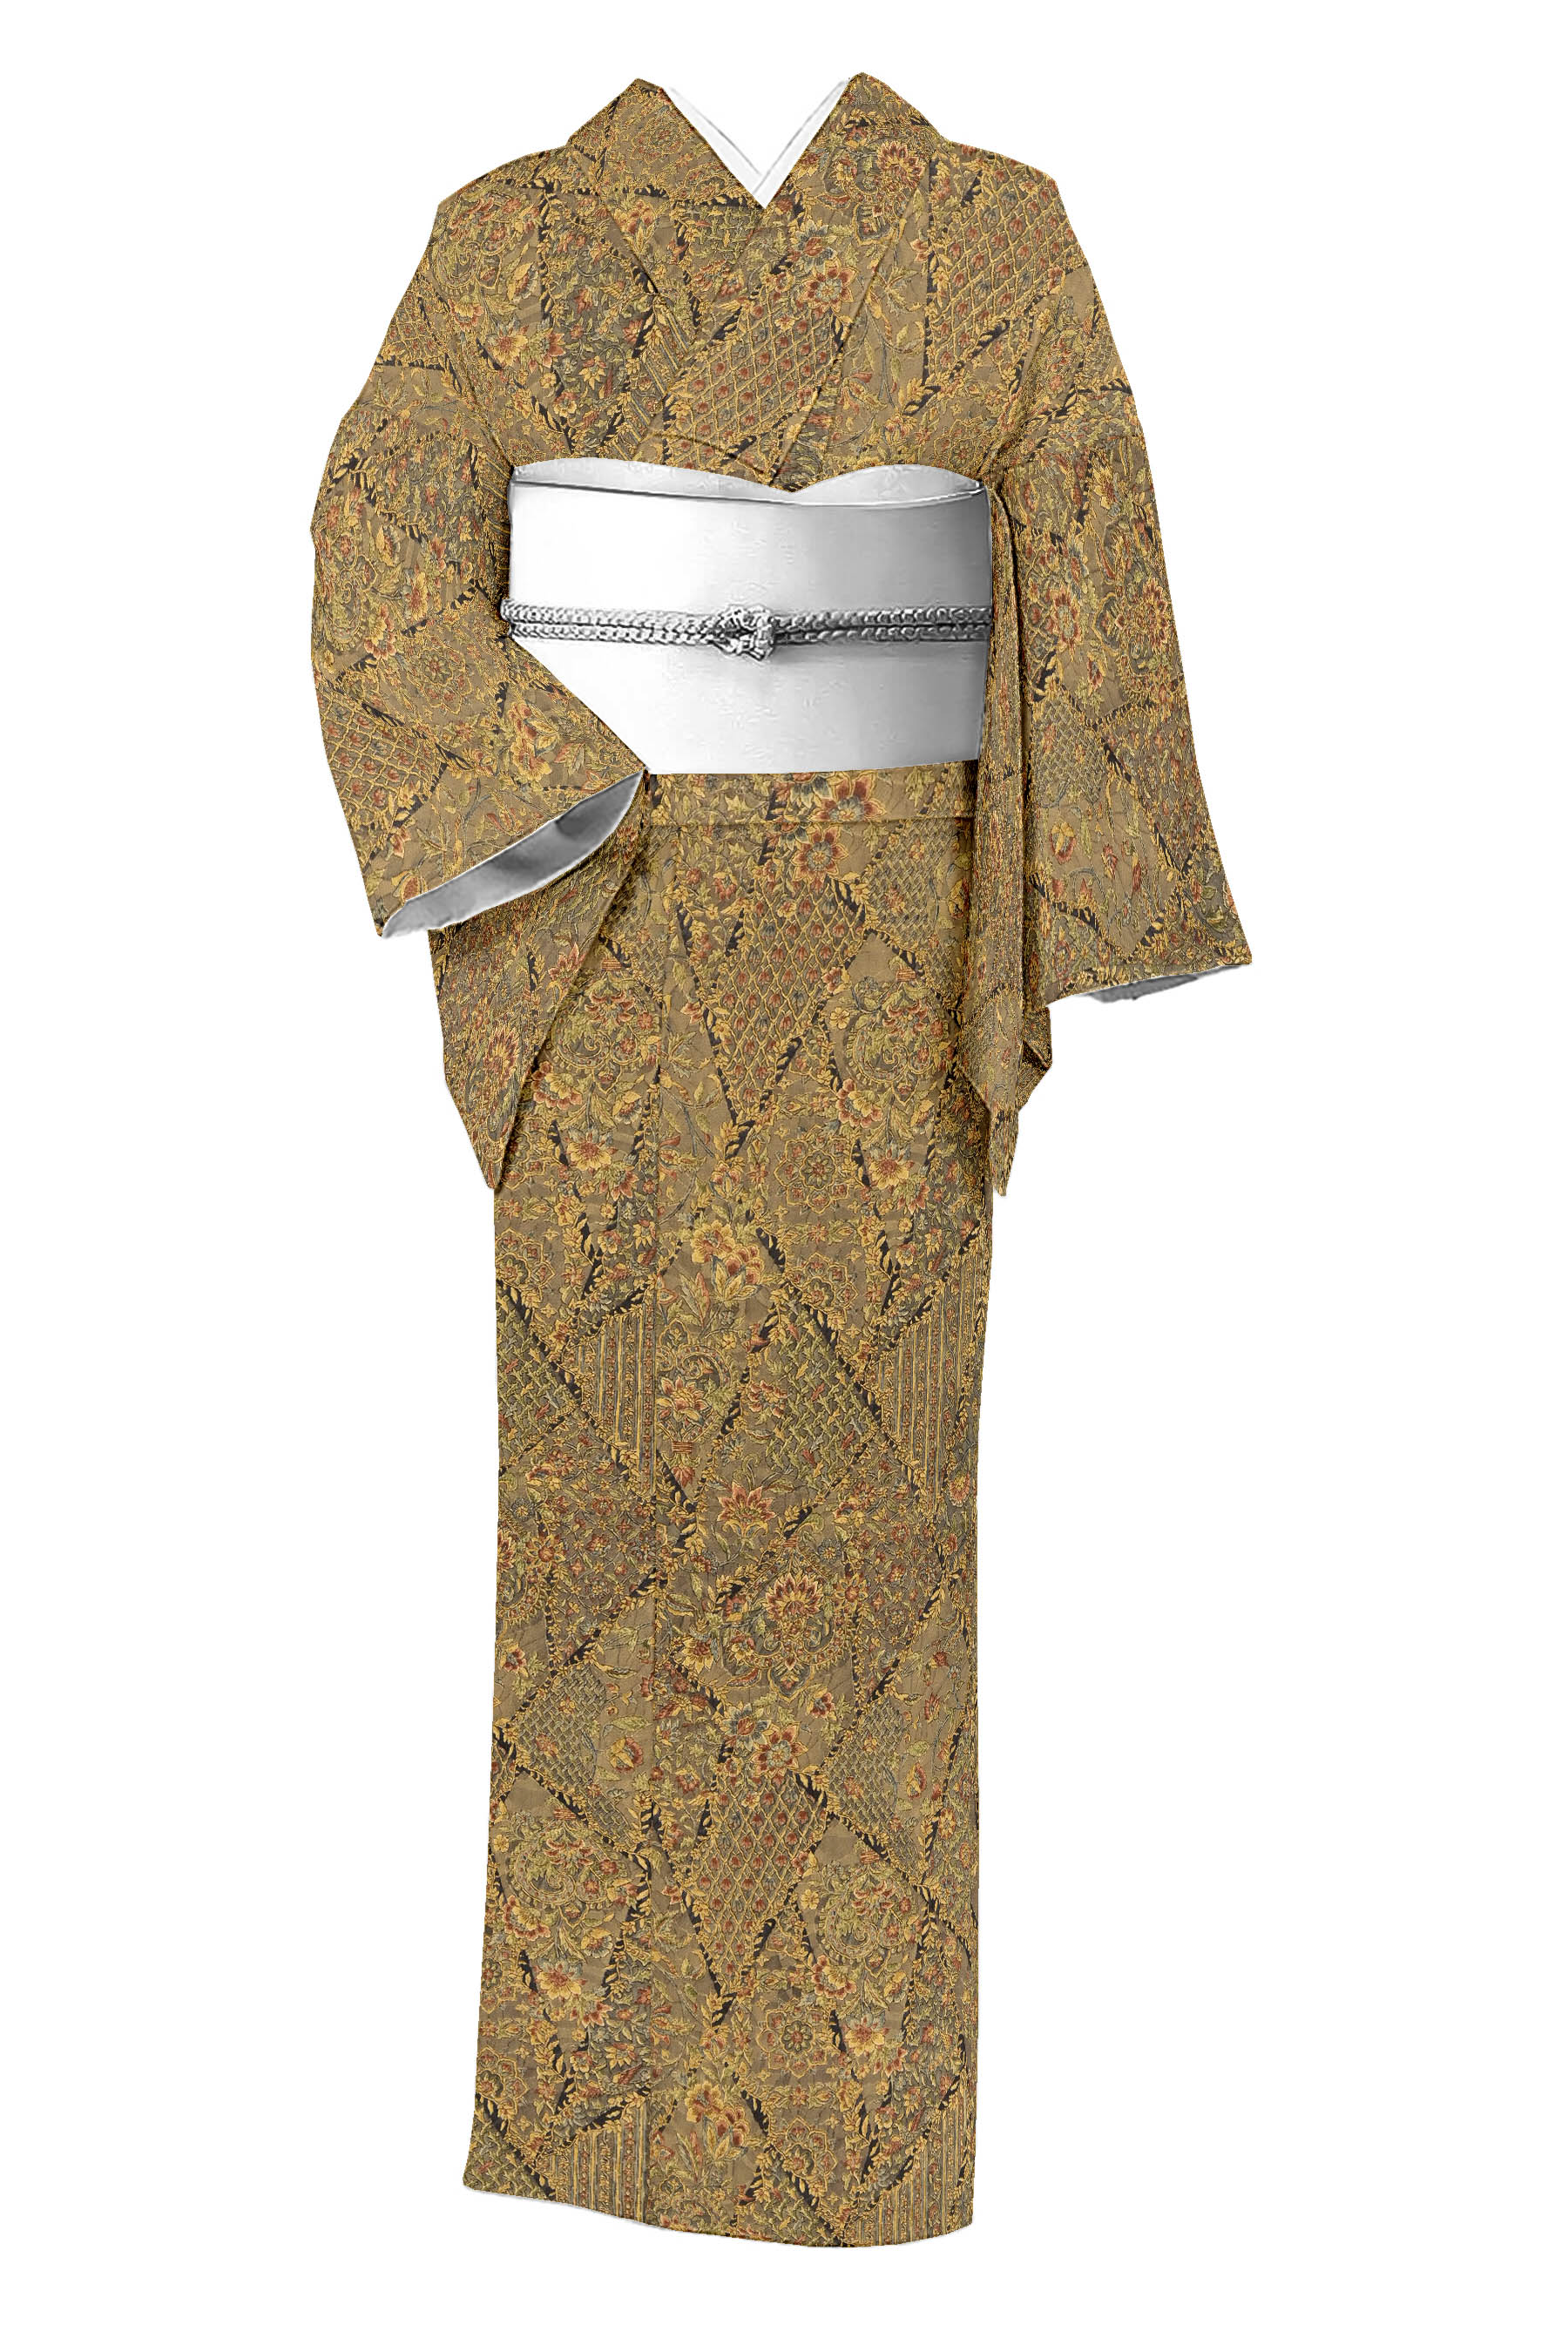 江戸更紗をお探しなら京都きもの市場【日本最大級の着物通販サイト】